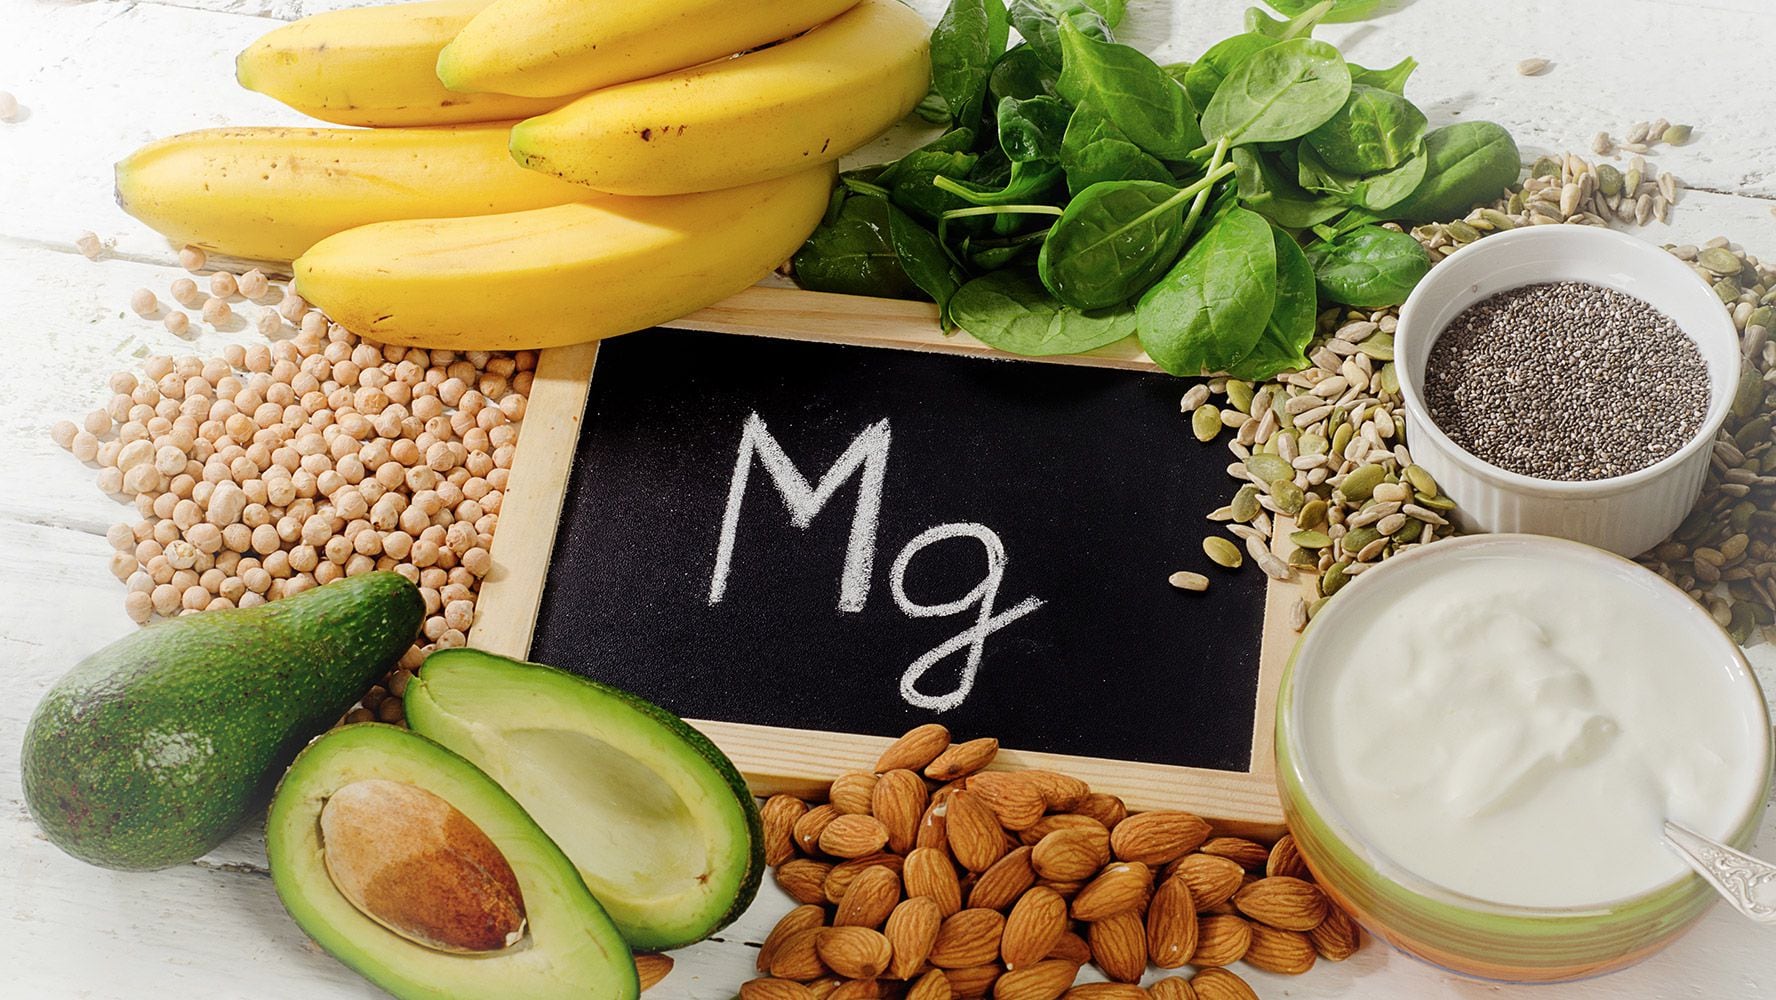 Alimentos como los cereales integrales, el aguacate o las verduras de hoja verde contienen magnesio, que tiene varios beneficios para la salud. (Foto: Shutterstock)